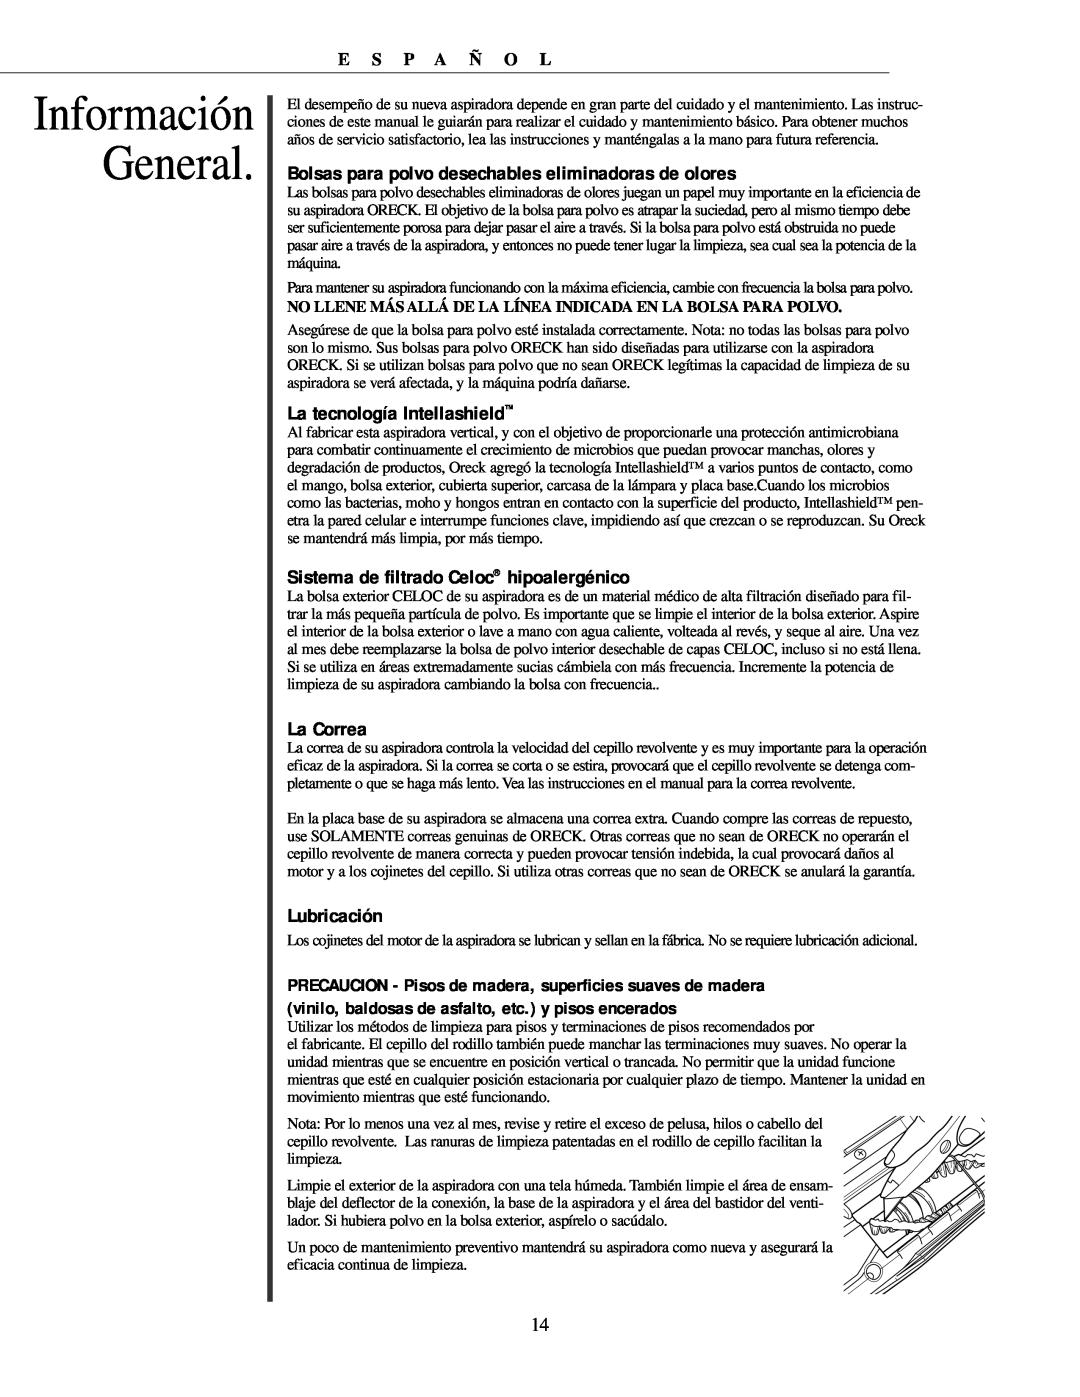 Oreck U3771 manual Información General, La tecnología Intellashield, Sistema de filtrado Celoc hipoalergénico, La Correa 